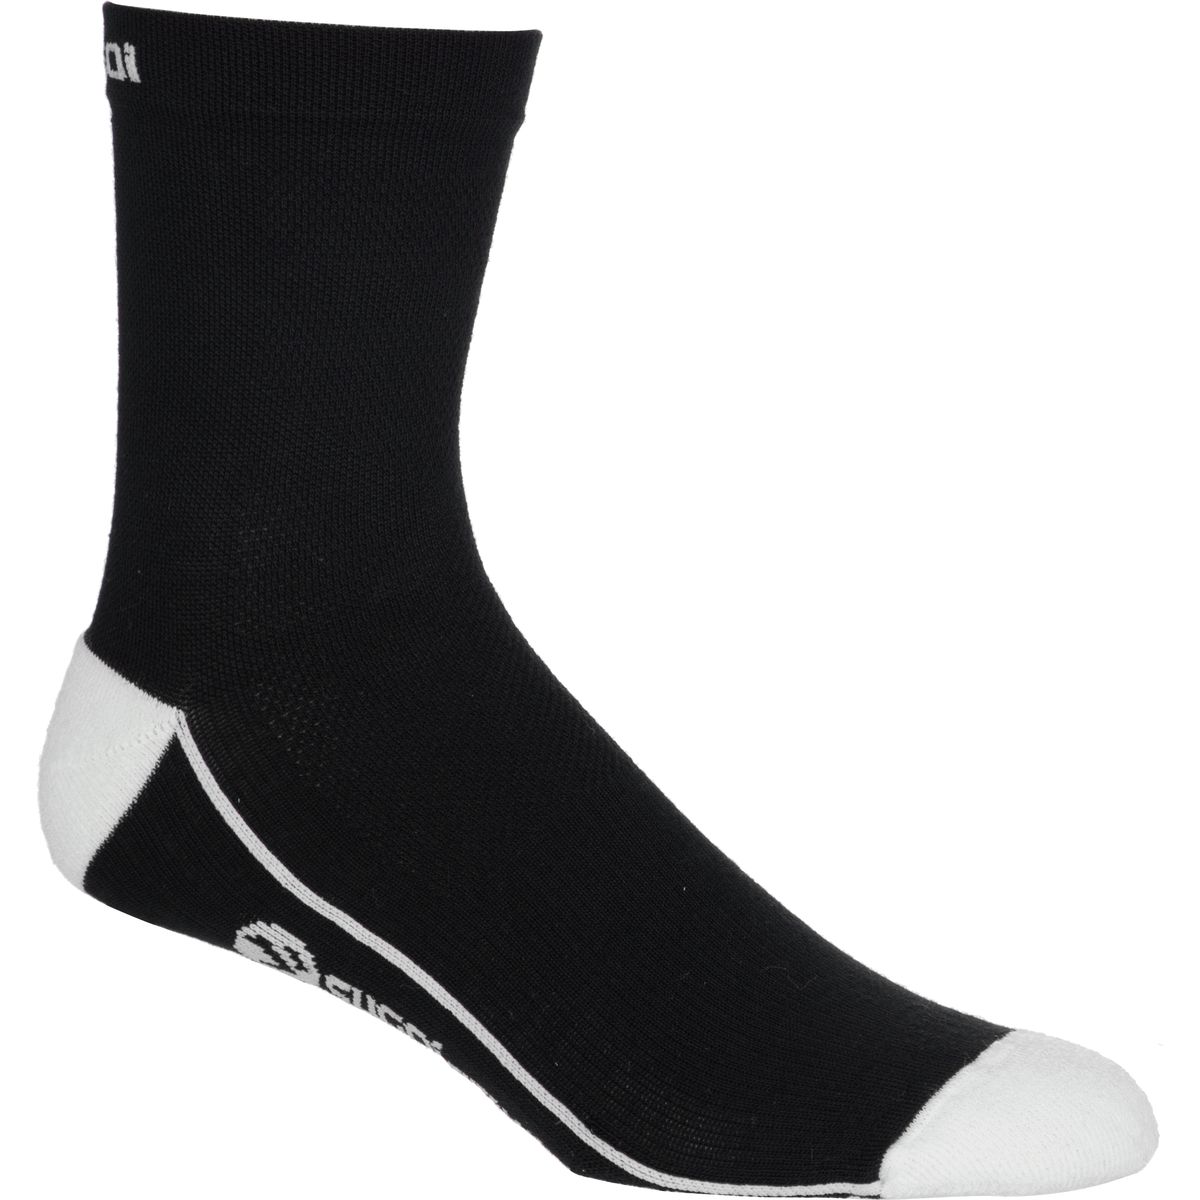 SUGOi RS Winter Sock Men's